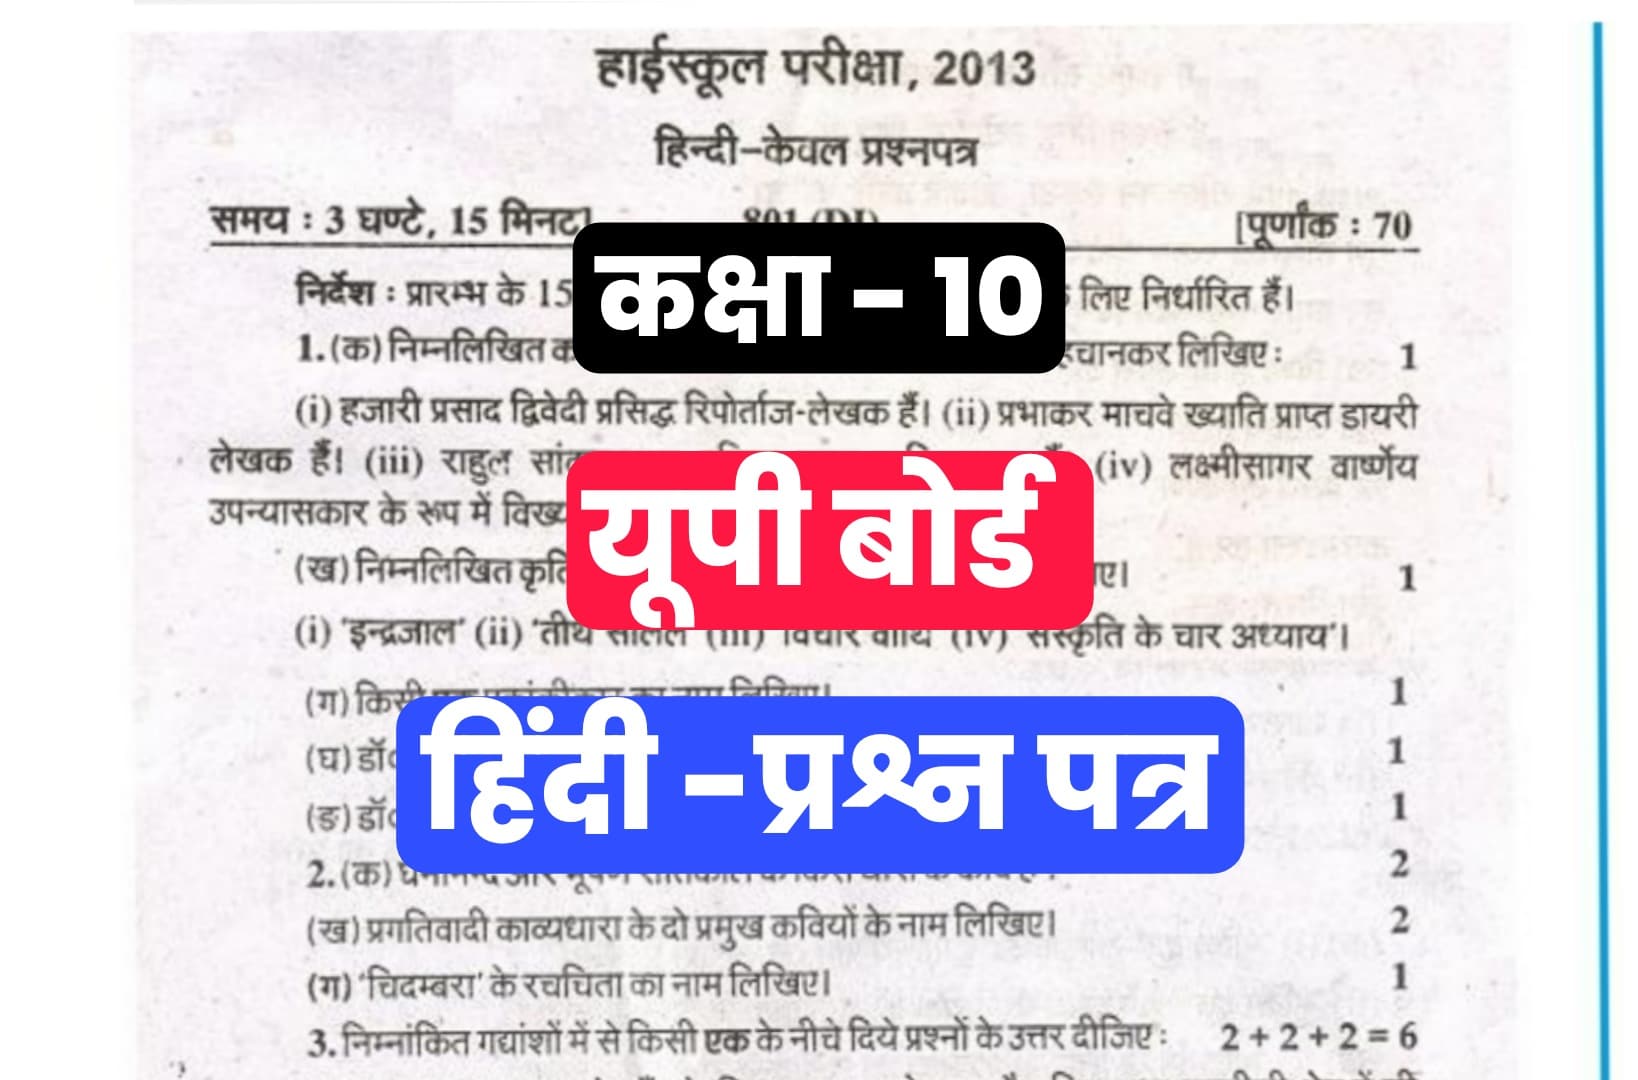 UP Board Class 10th Hindi Previous Year Paper : हिंदी विषय में पिछले साल आए थे ऐसे प्रश्न, पेपर करें डाउनलोड